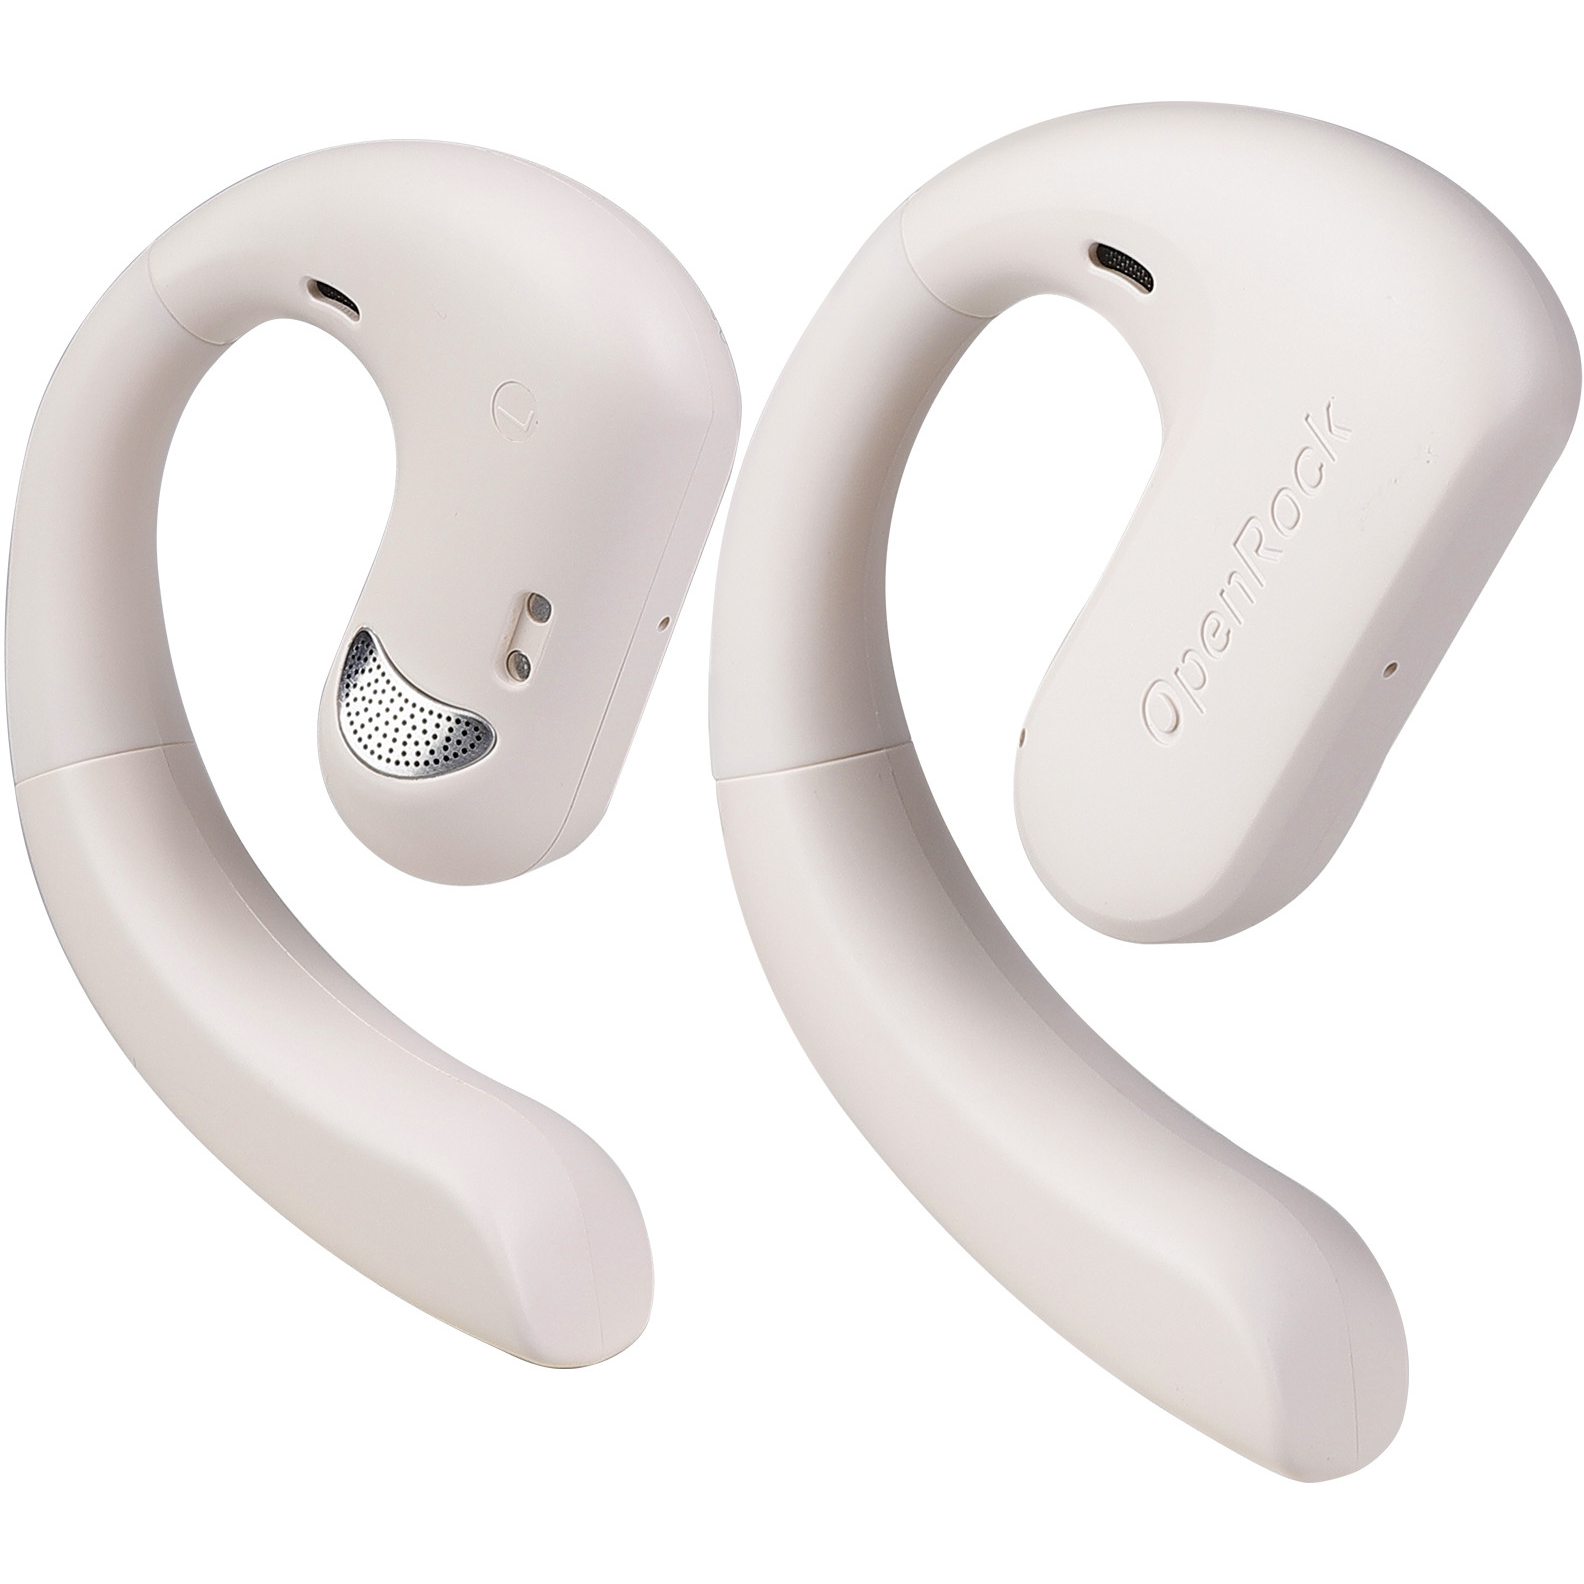 OneOdio OpenRock S C, open ear sport headphones bluetooth, c